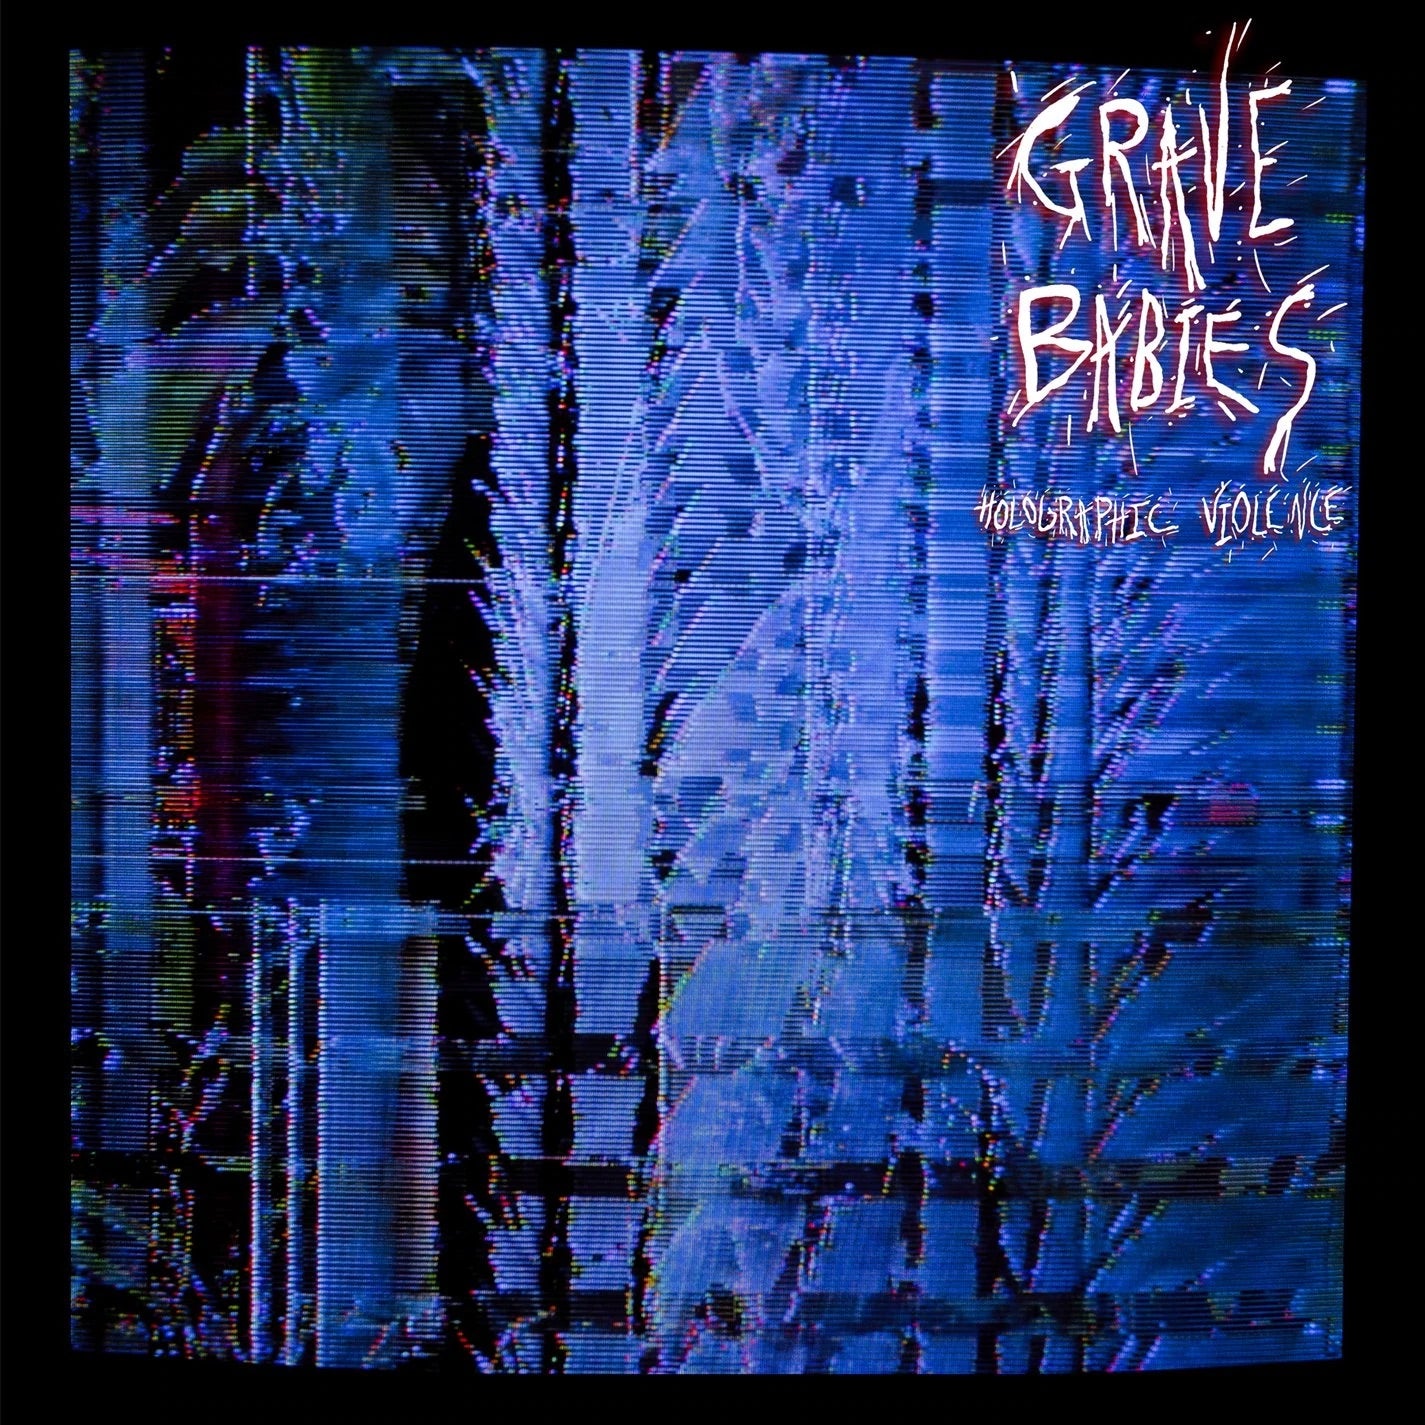 GRAVE BABIES - HOLOGRAPHIC VIOLENCE Vinyl LP